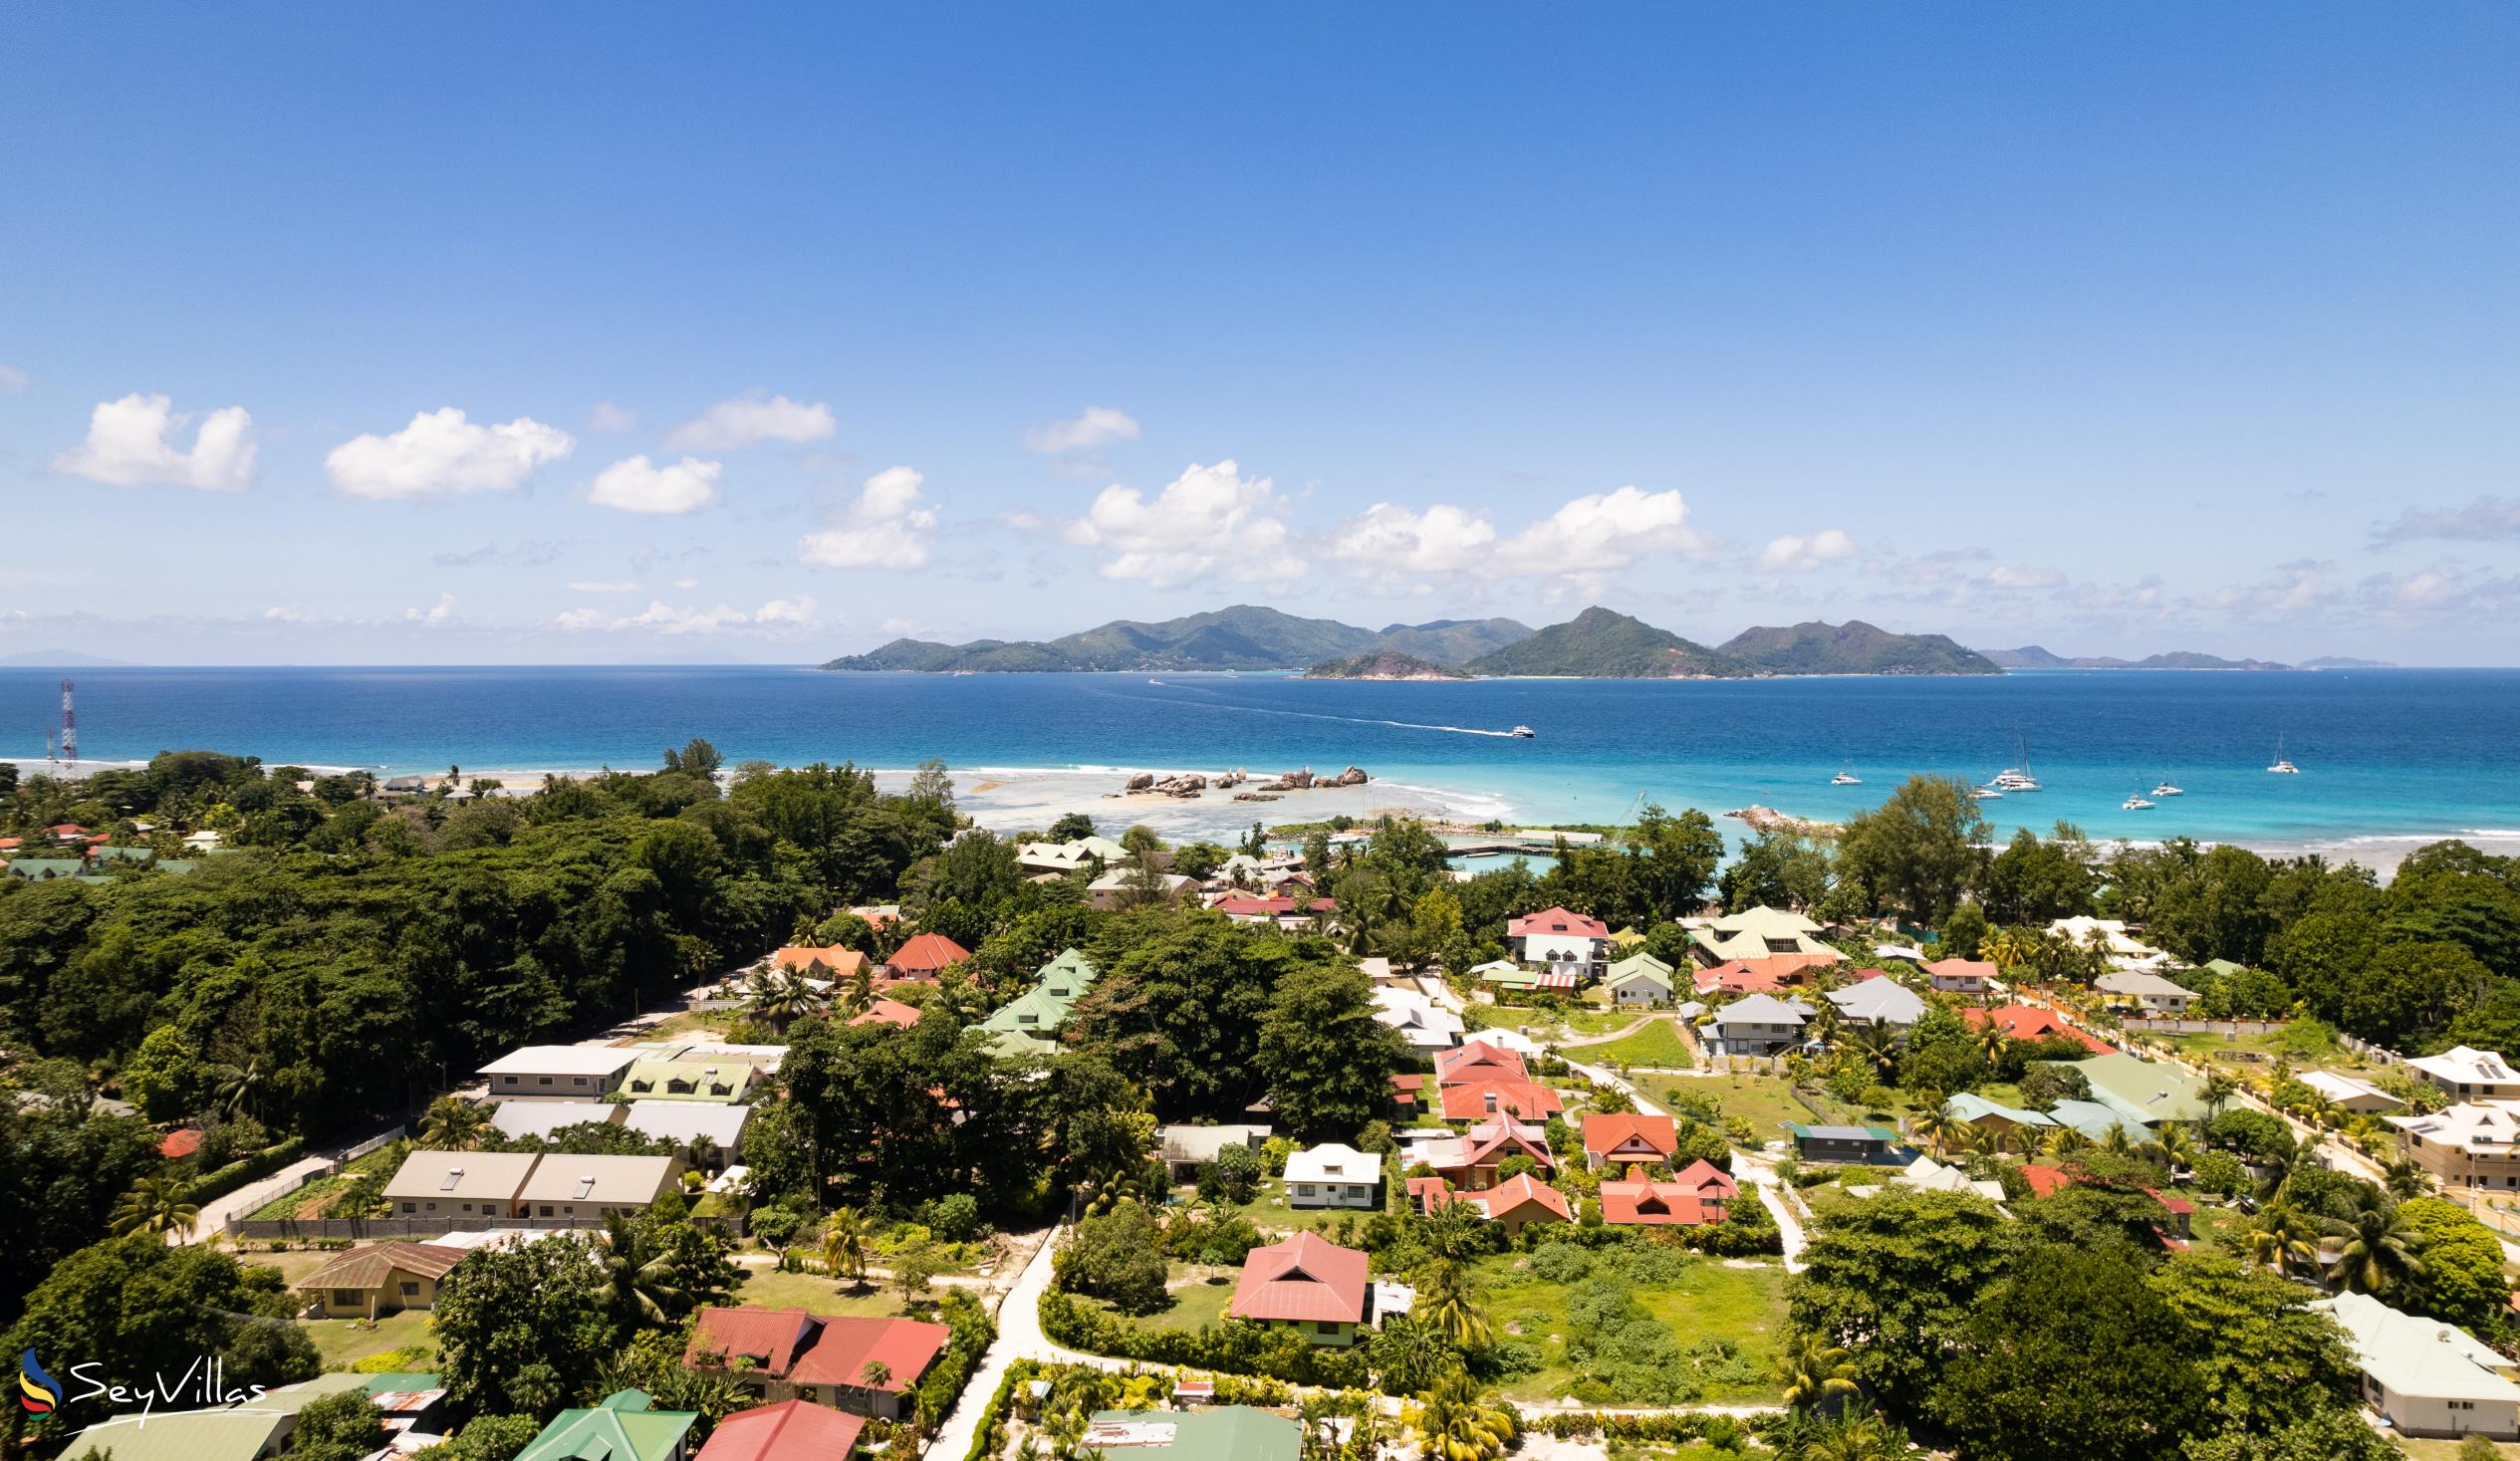 Foto 36: Buisson Guest House - Location - La Digue (Seychelles)